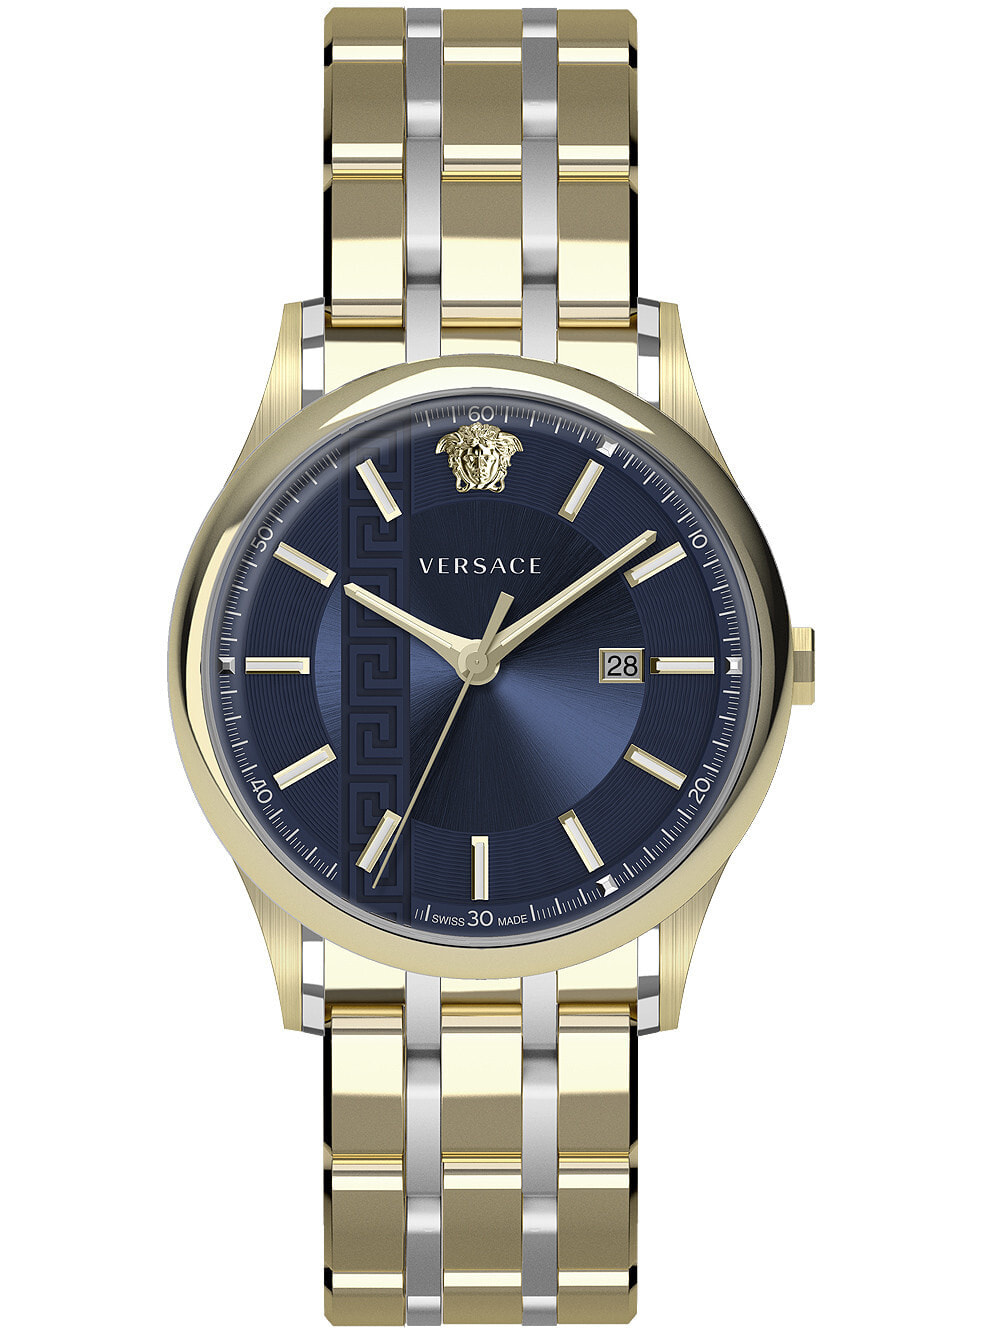 Мужские наручные часы с золотым браслетом Versace VE4A00720 Aiakos mens 44mm 5ATM